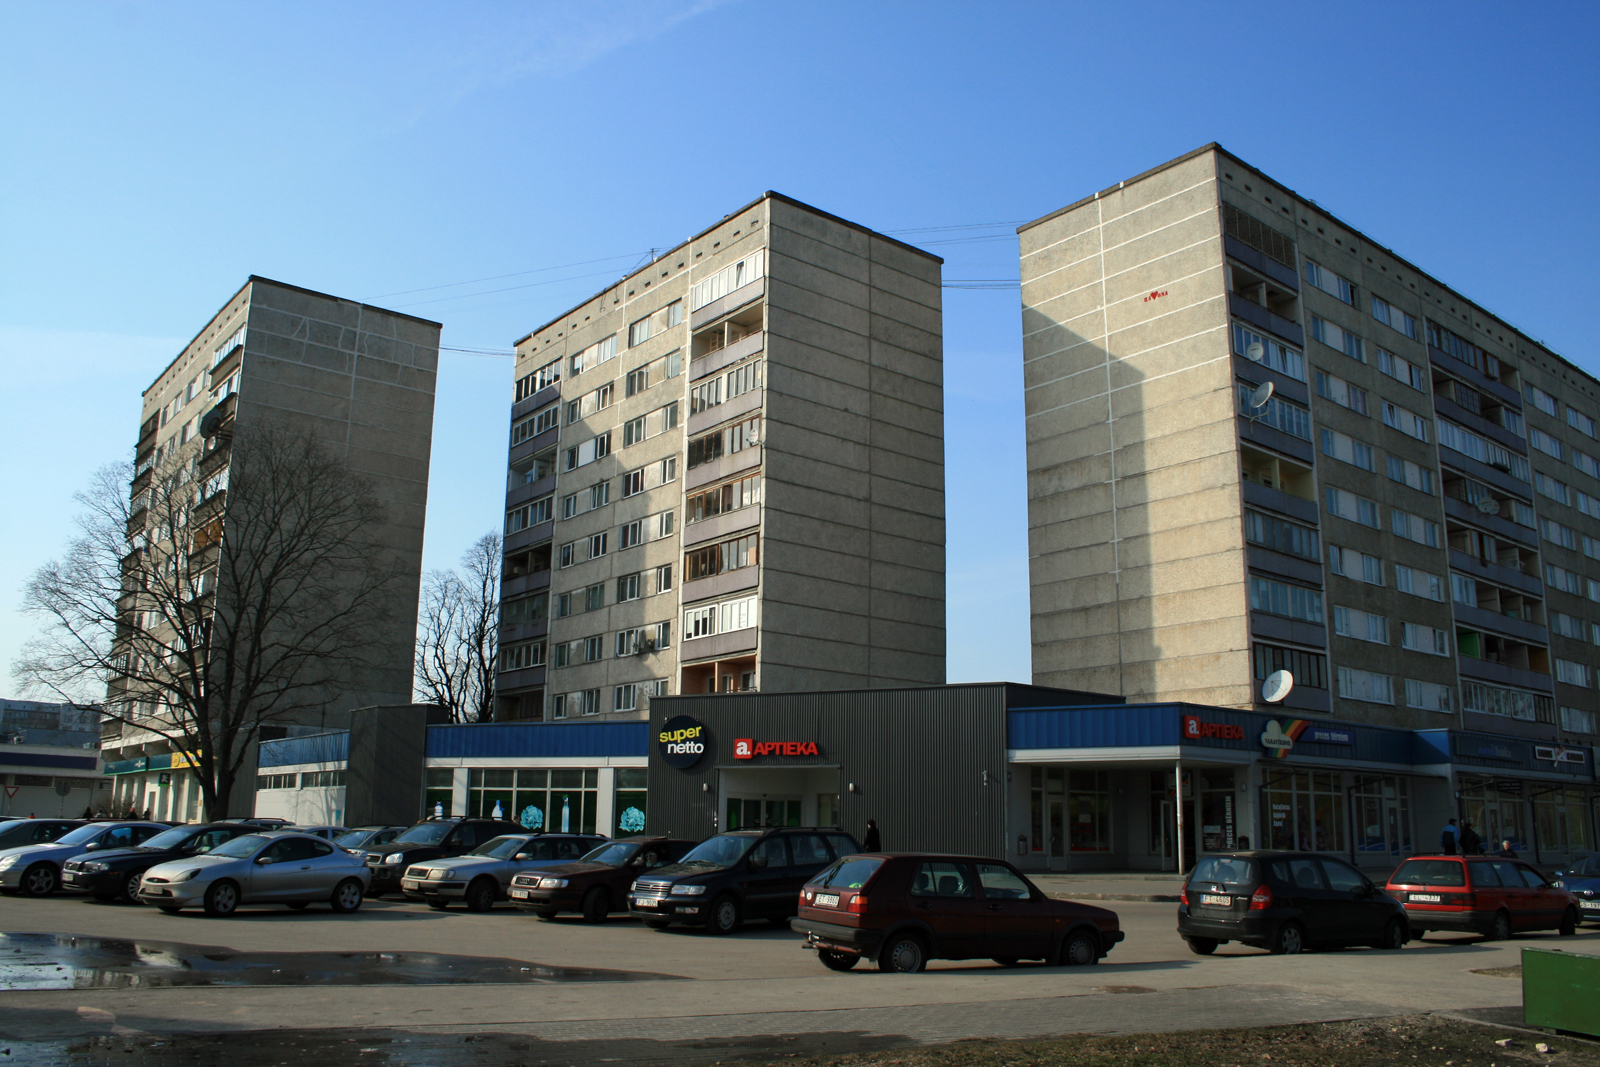 Rīga, 467. serija (wikipedia.org)